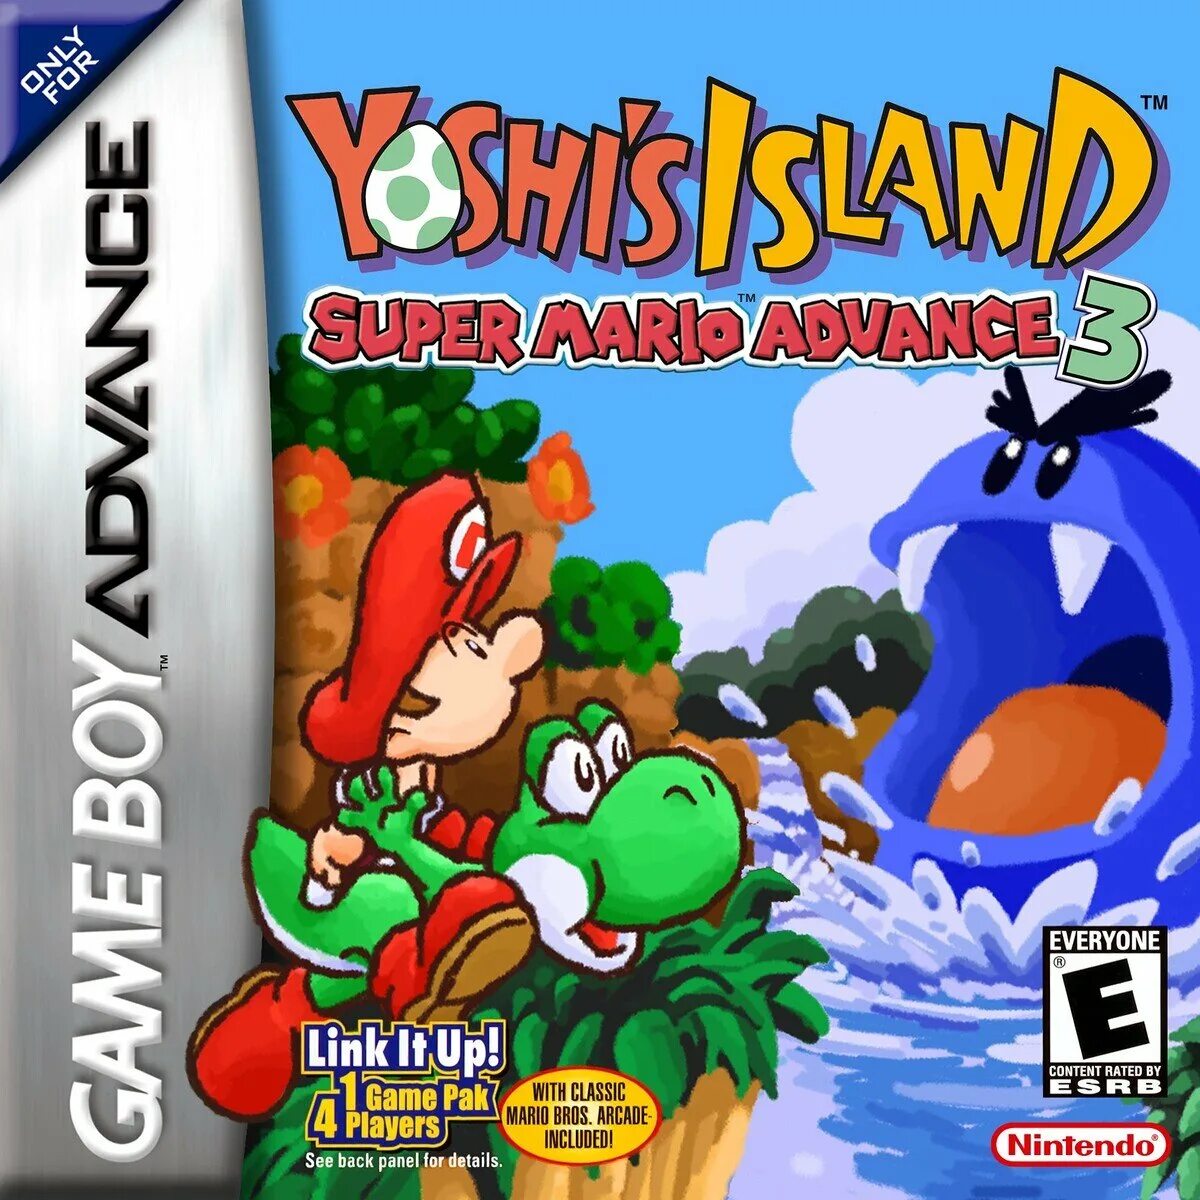 Mario yoshi island. Super Mario Advance 3 - Yoshi's Island GBA. GBA super Mario Advance 5. Super Mario Advance GBA. GBA: super Mario Advance Cover.